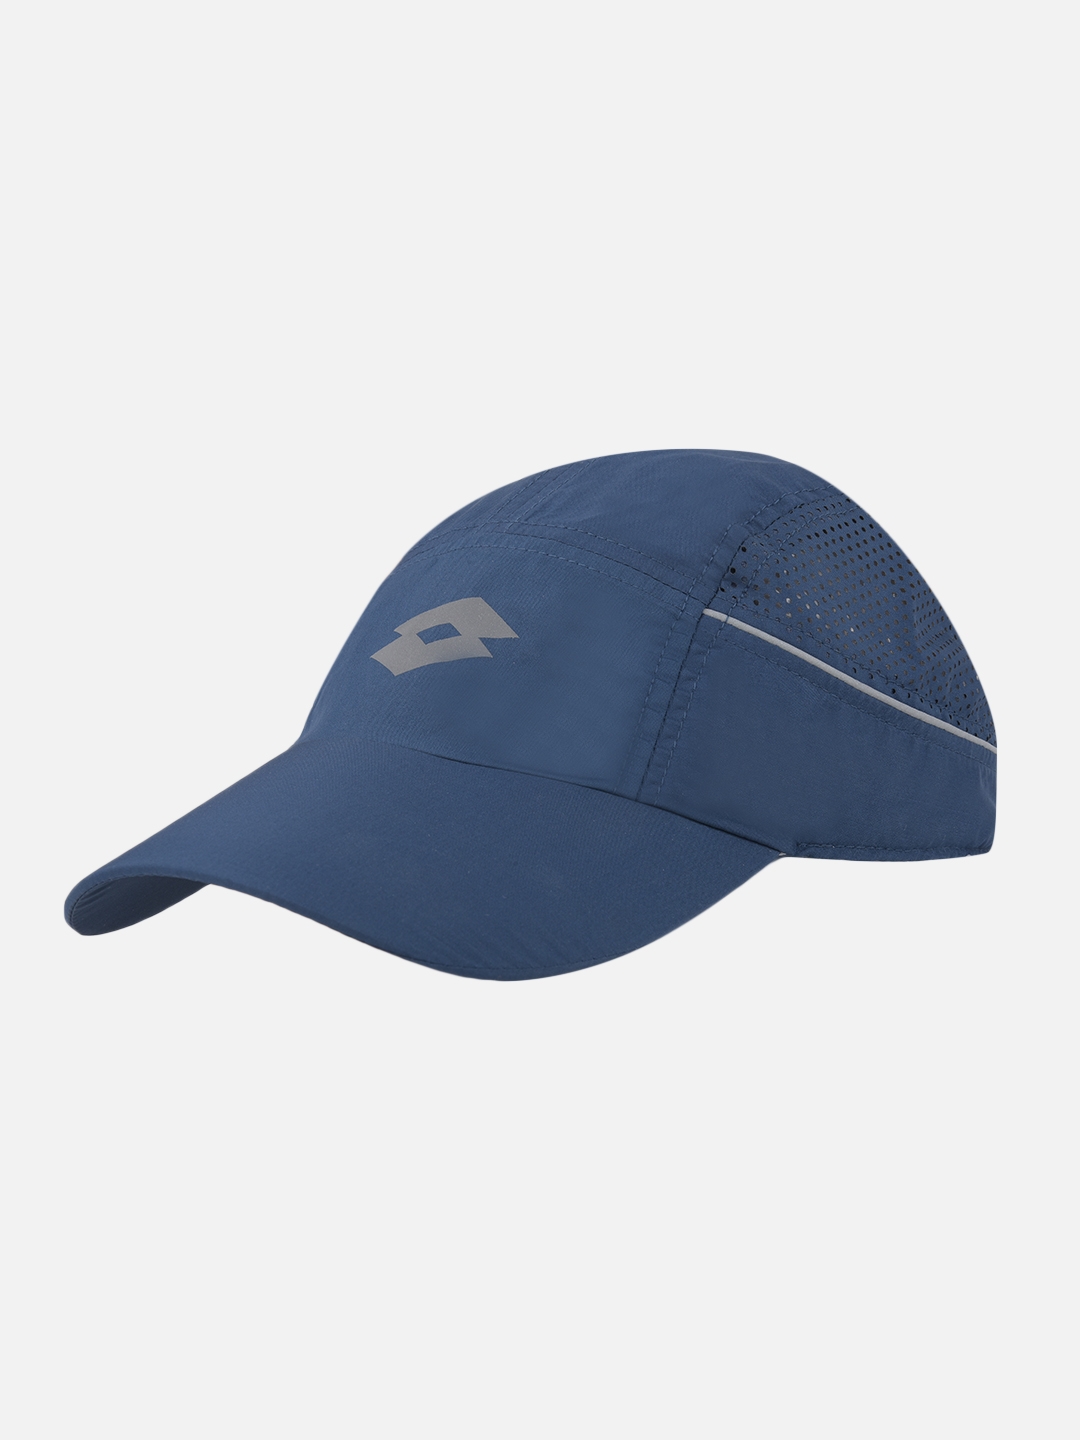 Lotto | Unisex Blue Caps